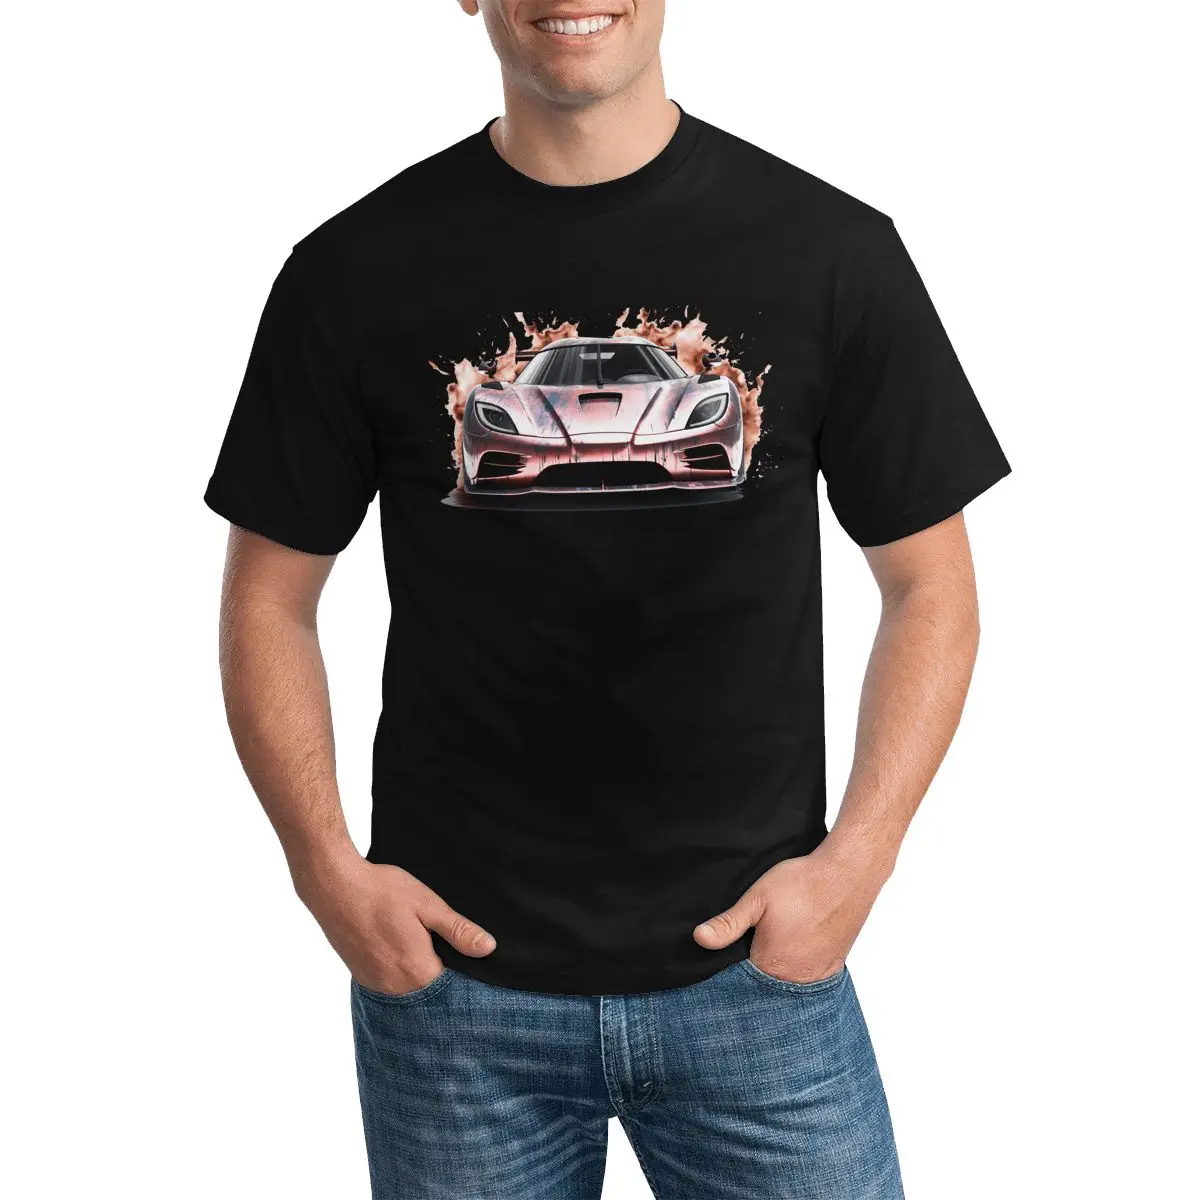 

Футболка Ultimate в стиле ретро с изображением спортивного автомобиля, суперхудожественная смешная футболка с графическим рисунком, летняя футболка из 100 хлопка, футболки